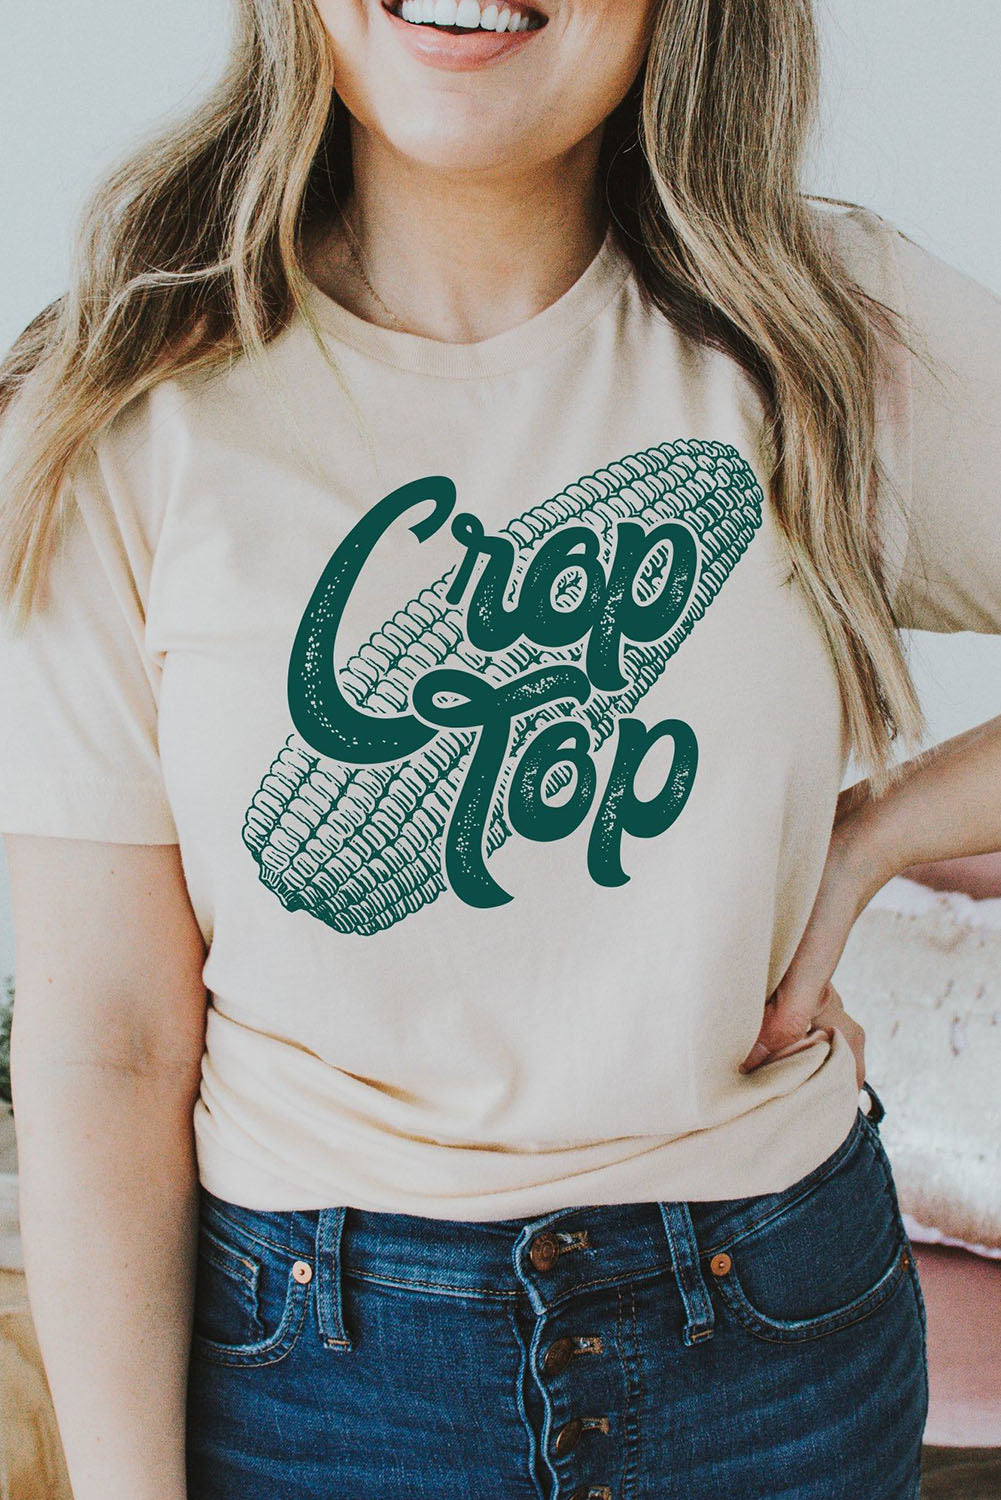 Corn Crop Top Graphic Tee